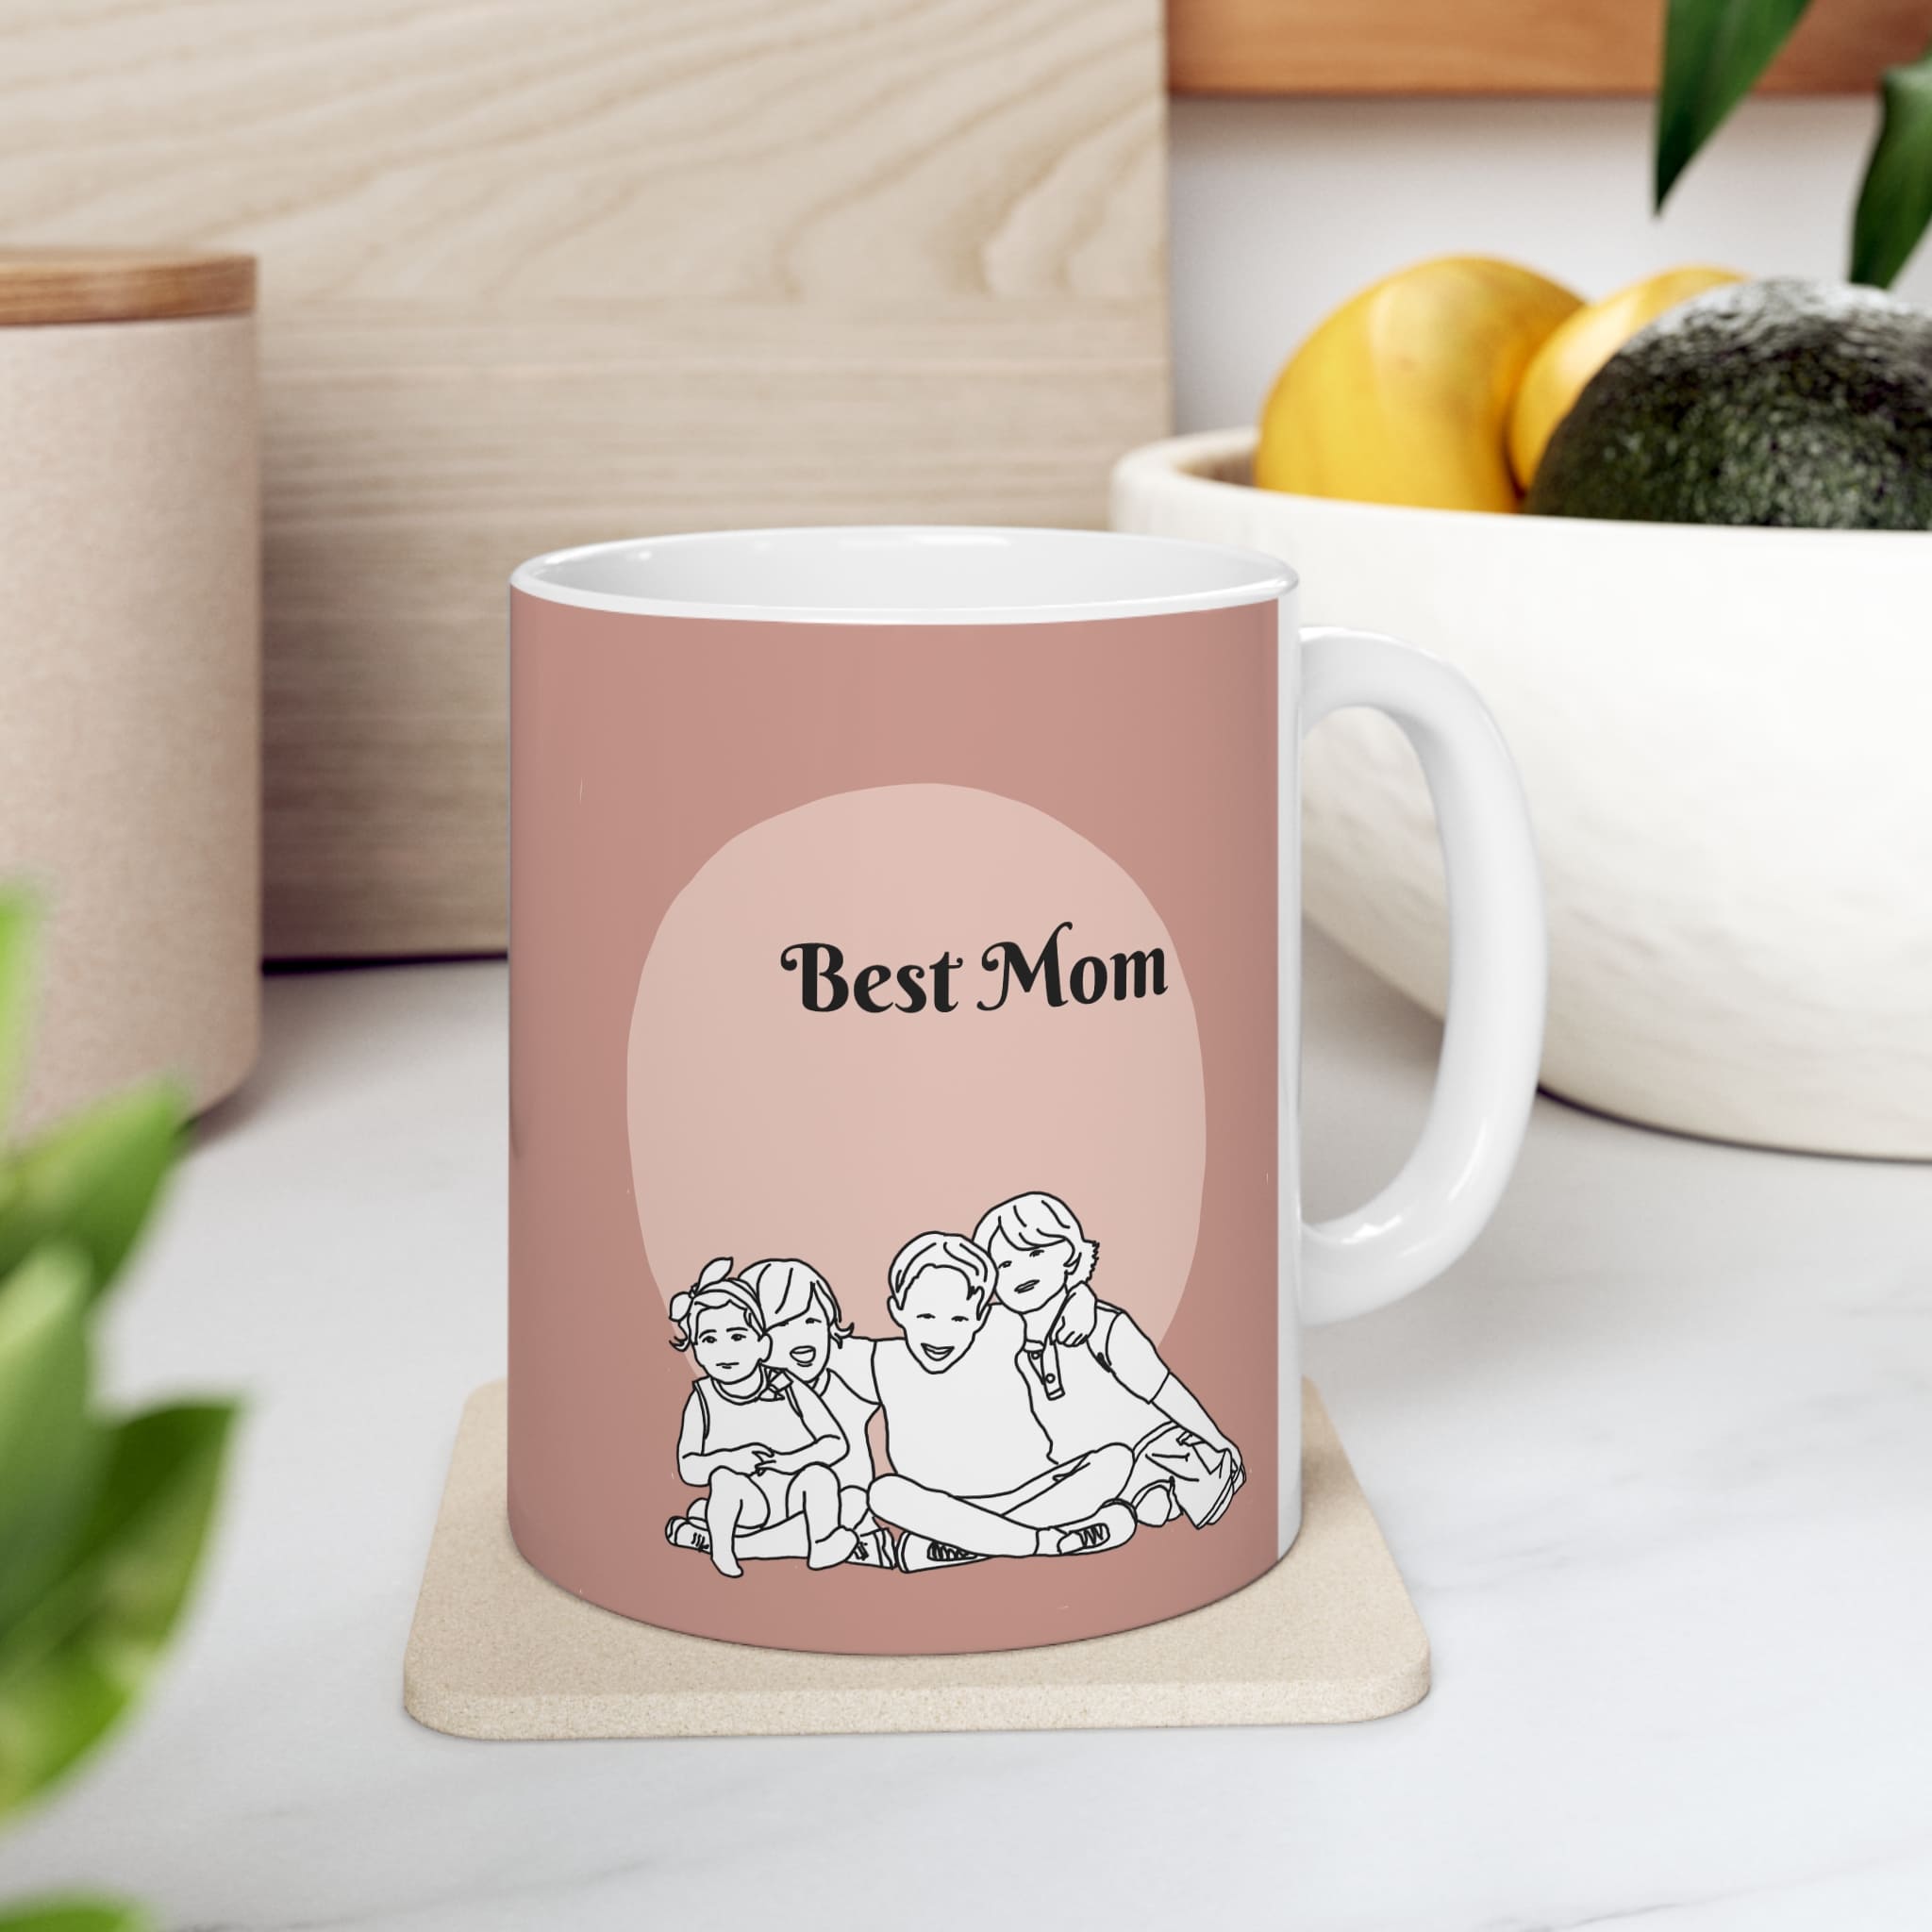 Best mom custom line art portrait mug of kids ideal mommy gift